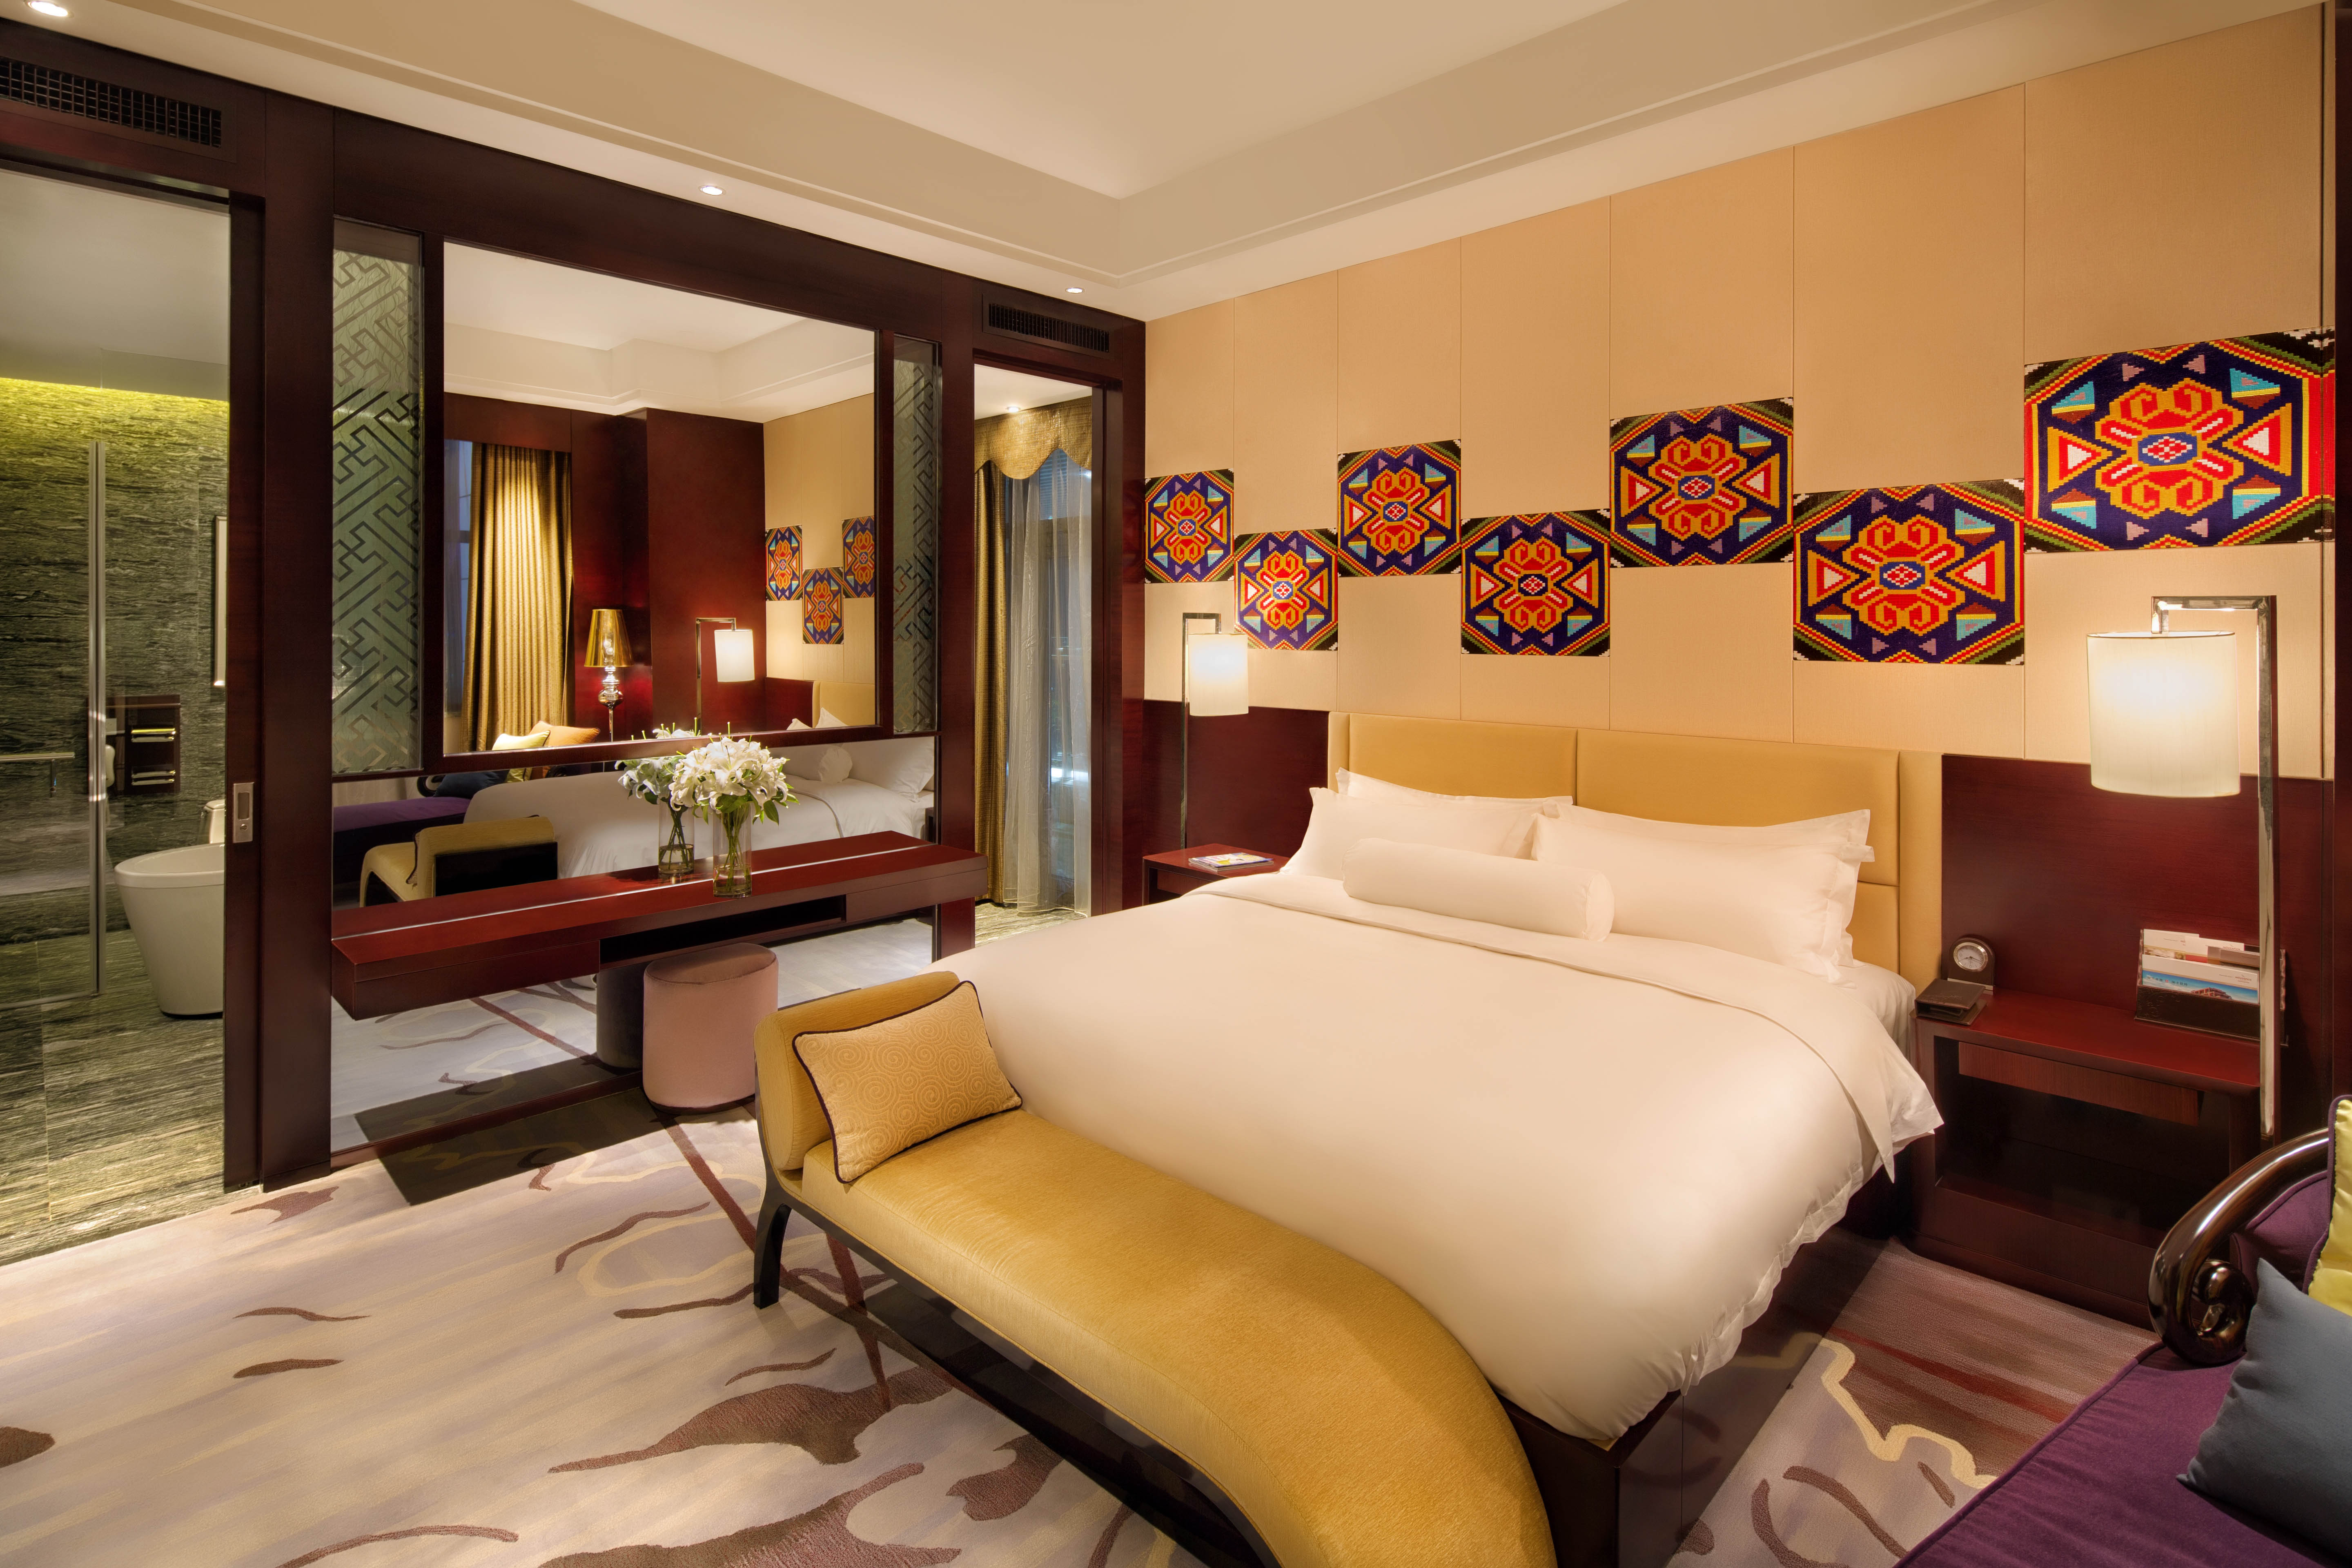 hotel bedroom furniture manufacturer china